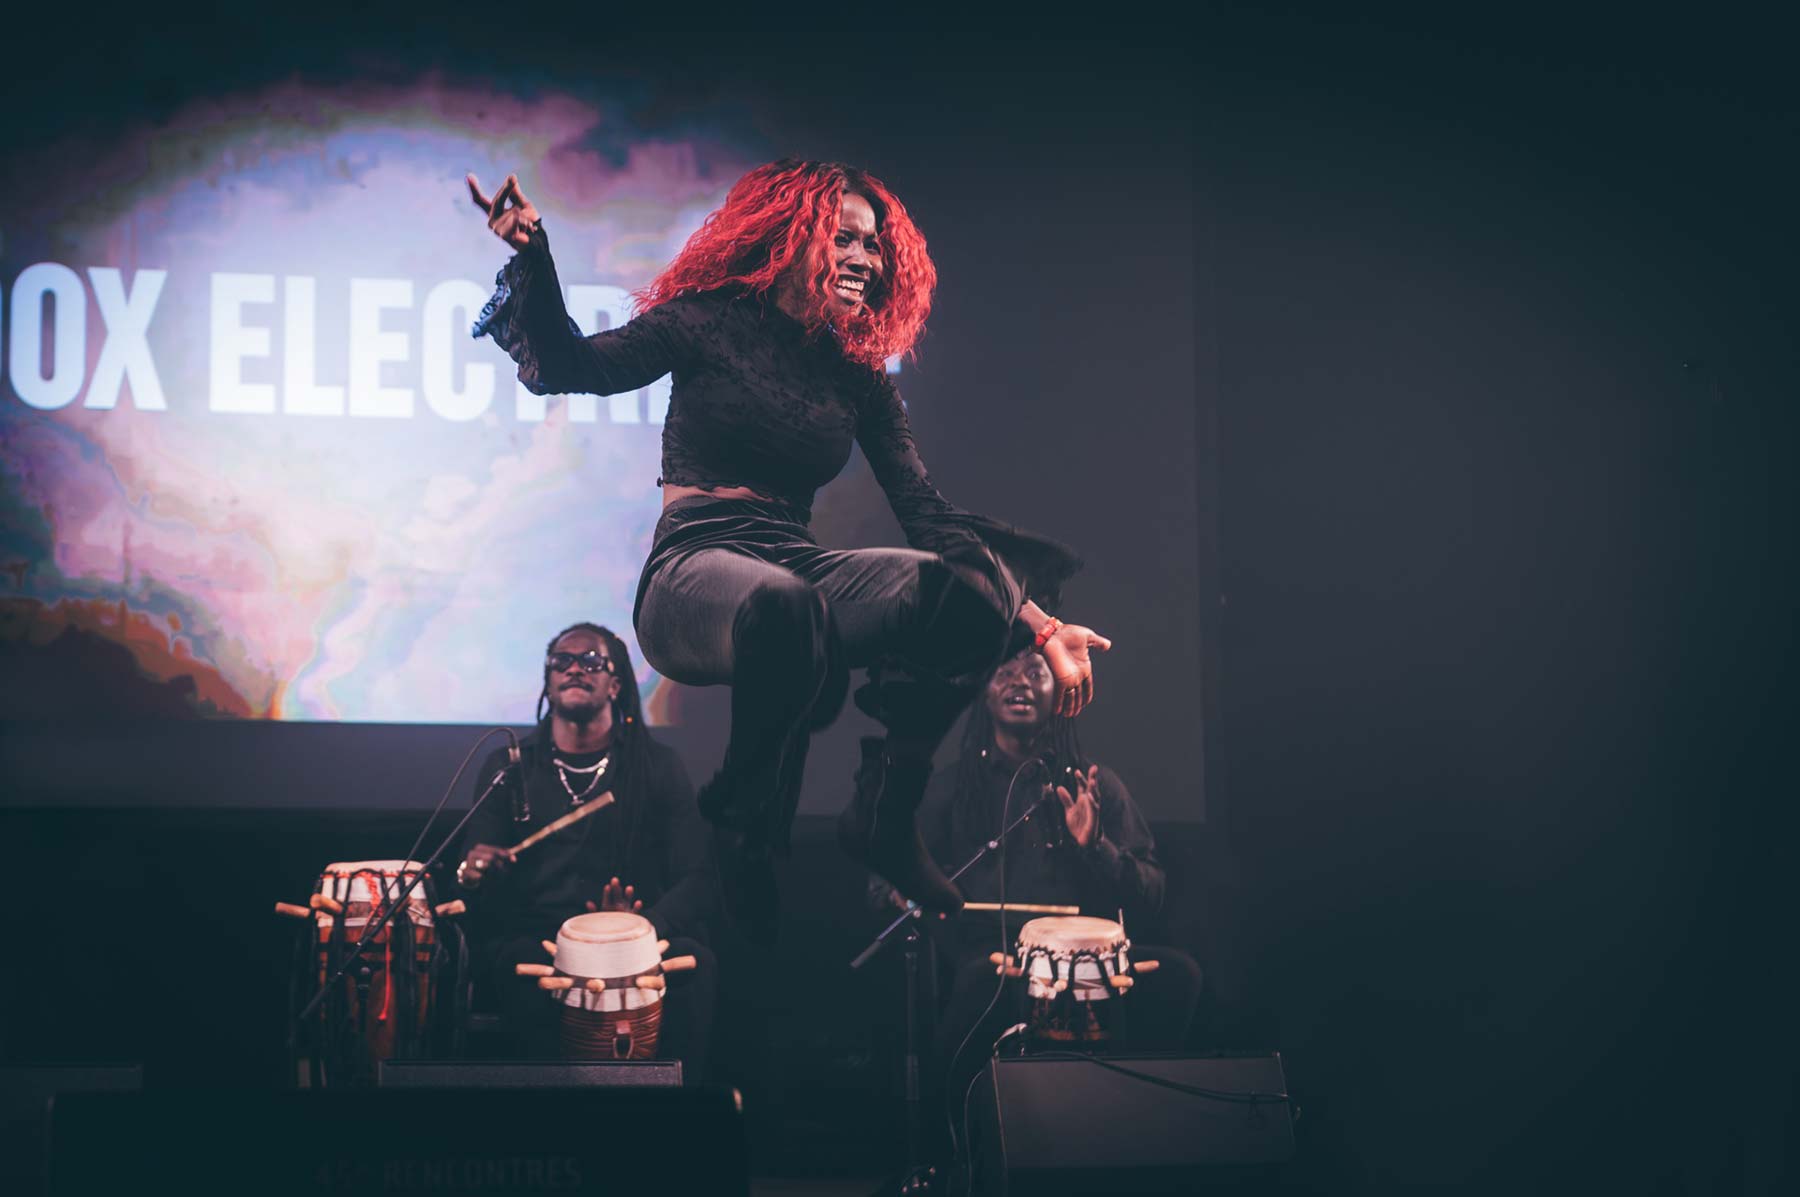 une artiste au cheveux rouge en plein saut devant des joueurs de percussion